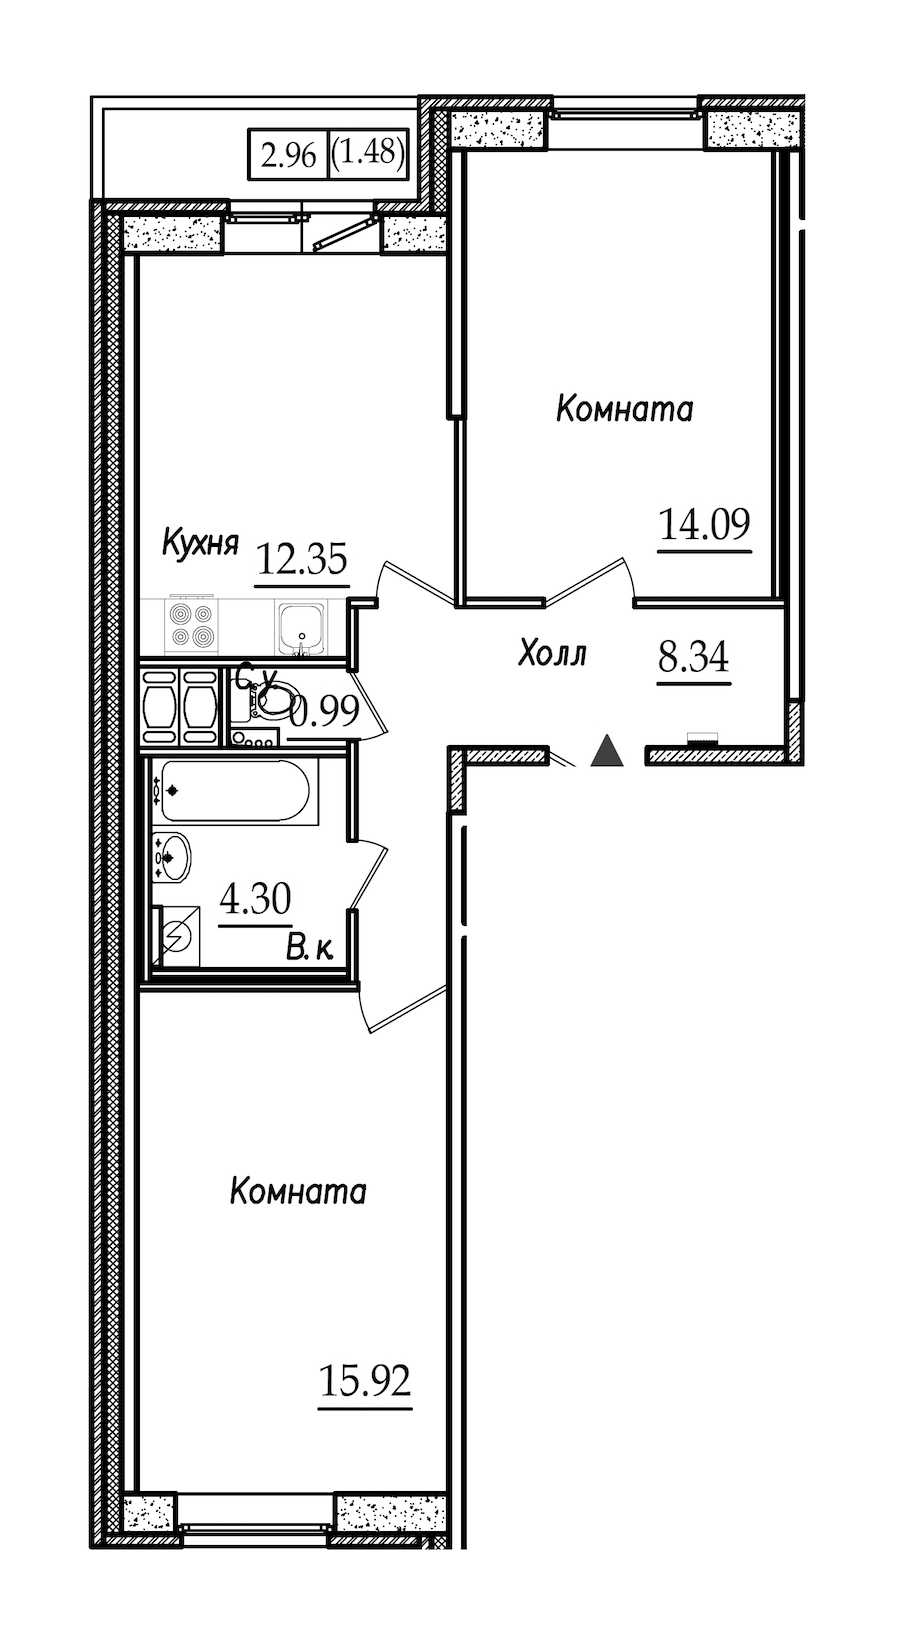 Двухкомнатная квартира в : площадь 57.47 м2 , этаж: 7 – купить в Санкт-Петербурге